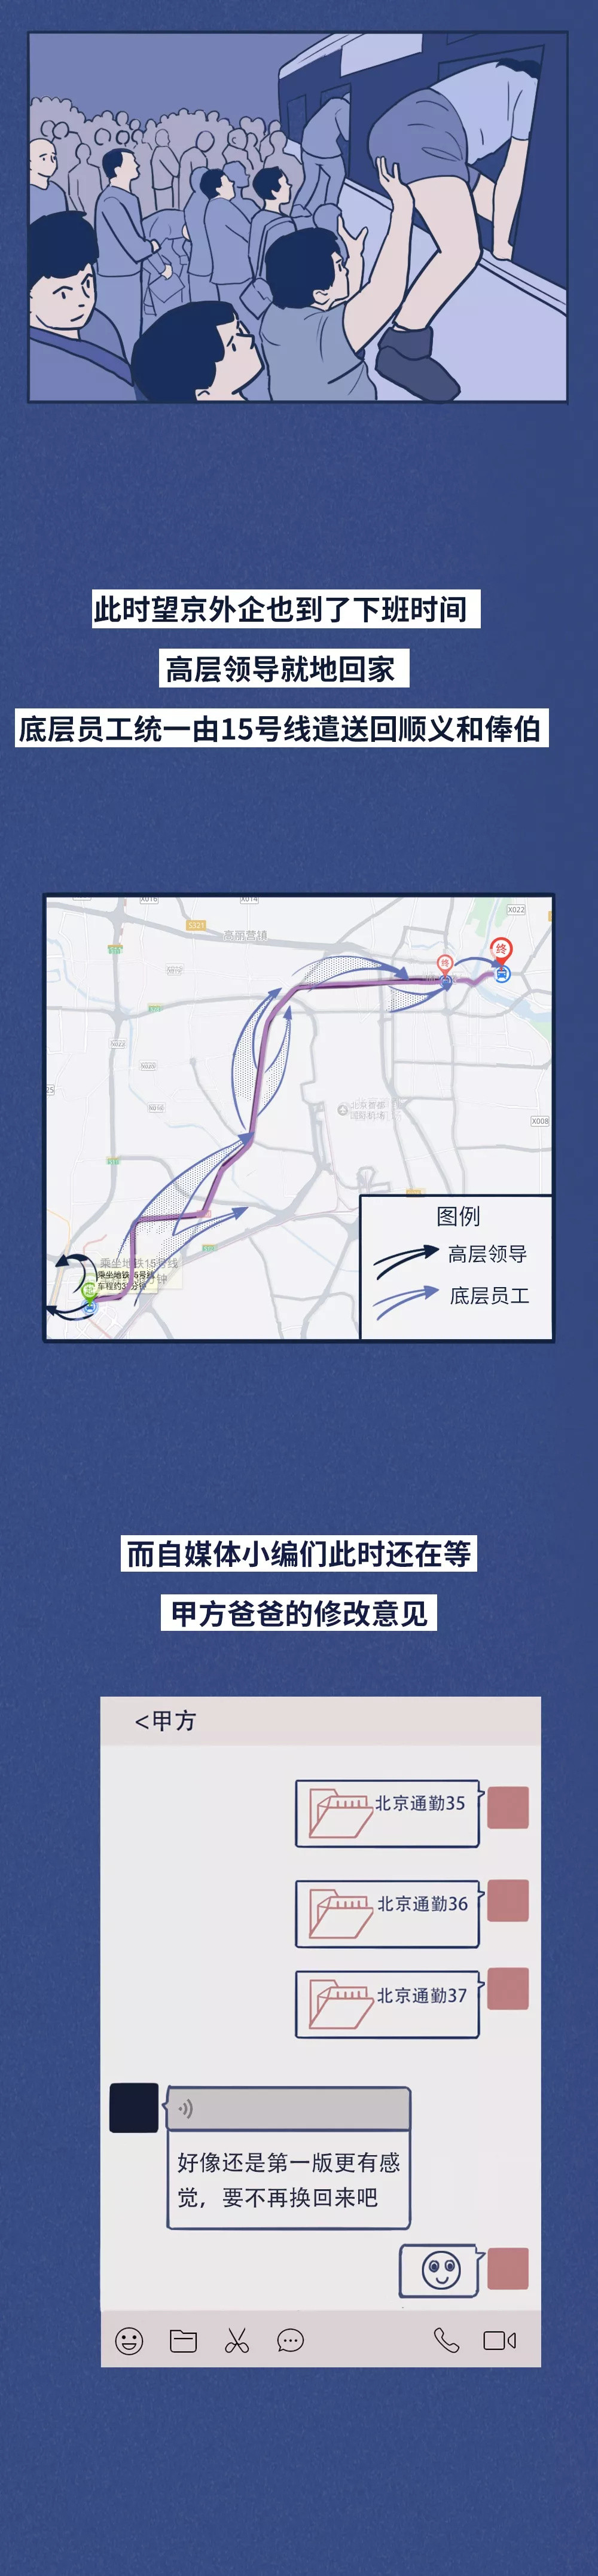 北京通勤图鉴：打车贵，公交堵，挤地铁的社畜得练武